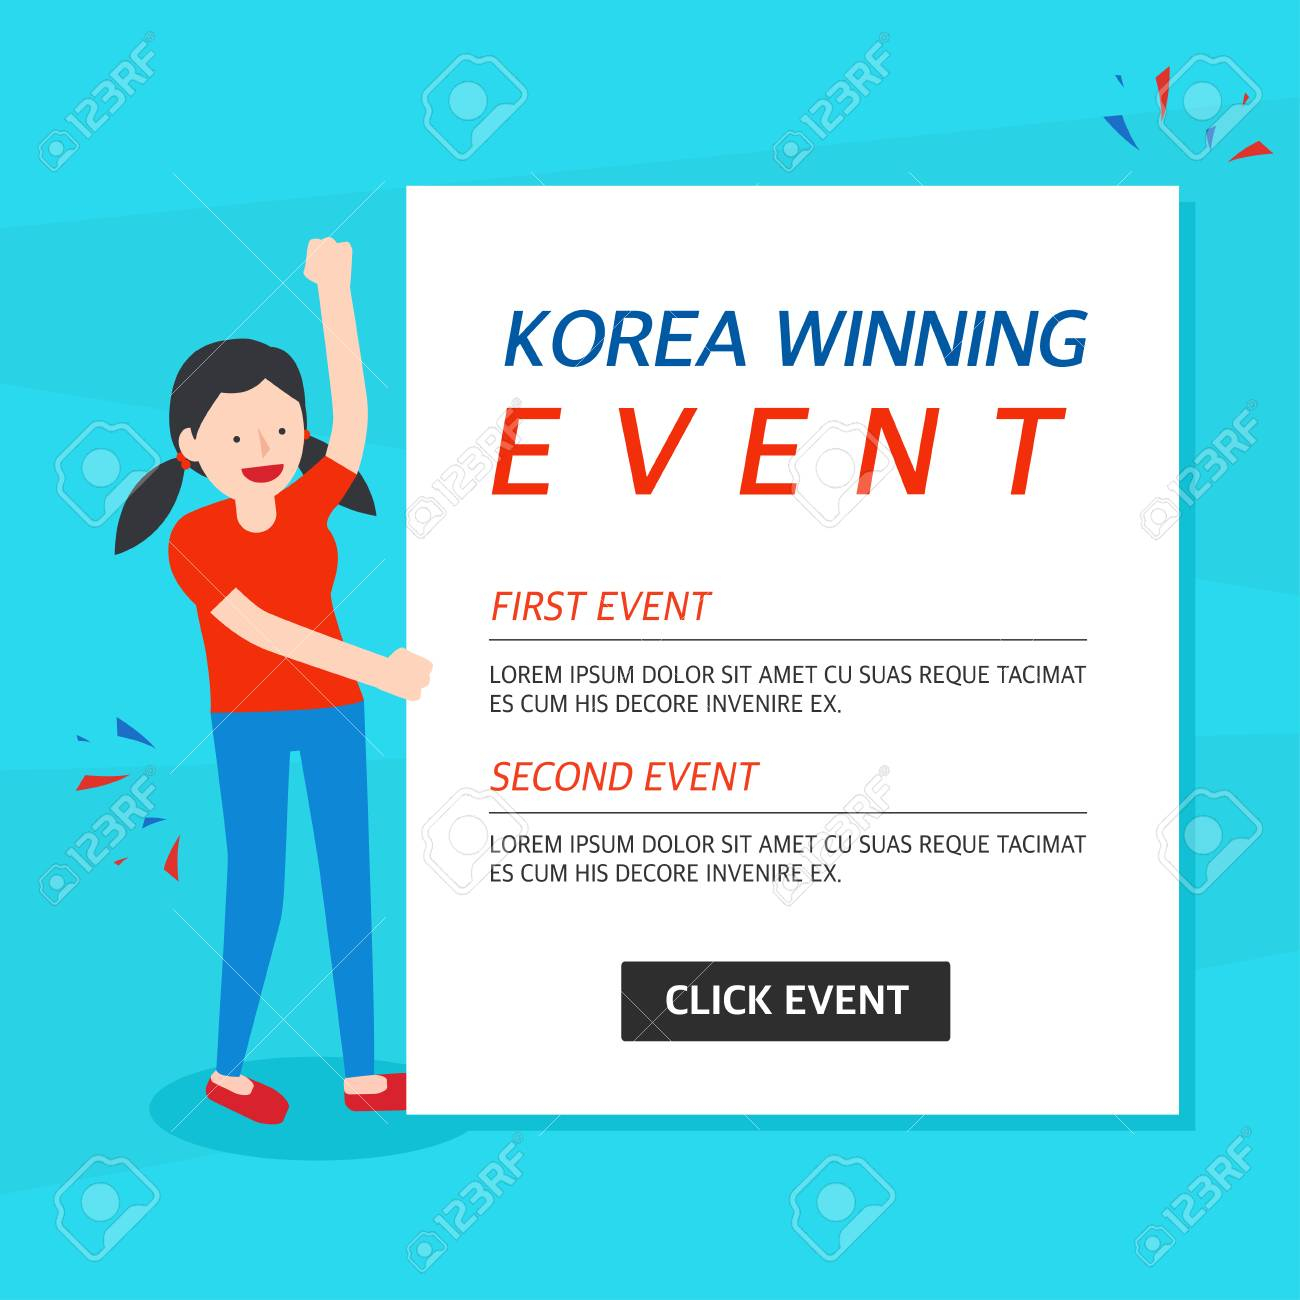 Korea Winning Event Banner Template Inside Event Banner Template